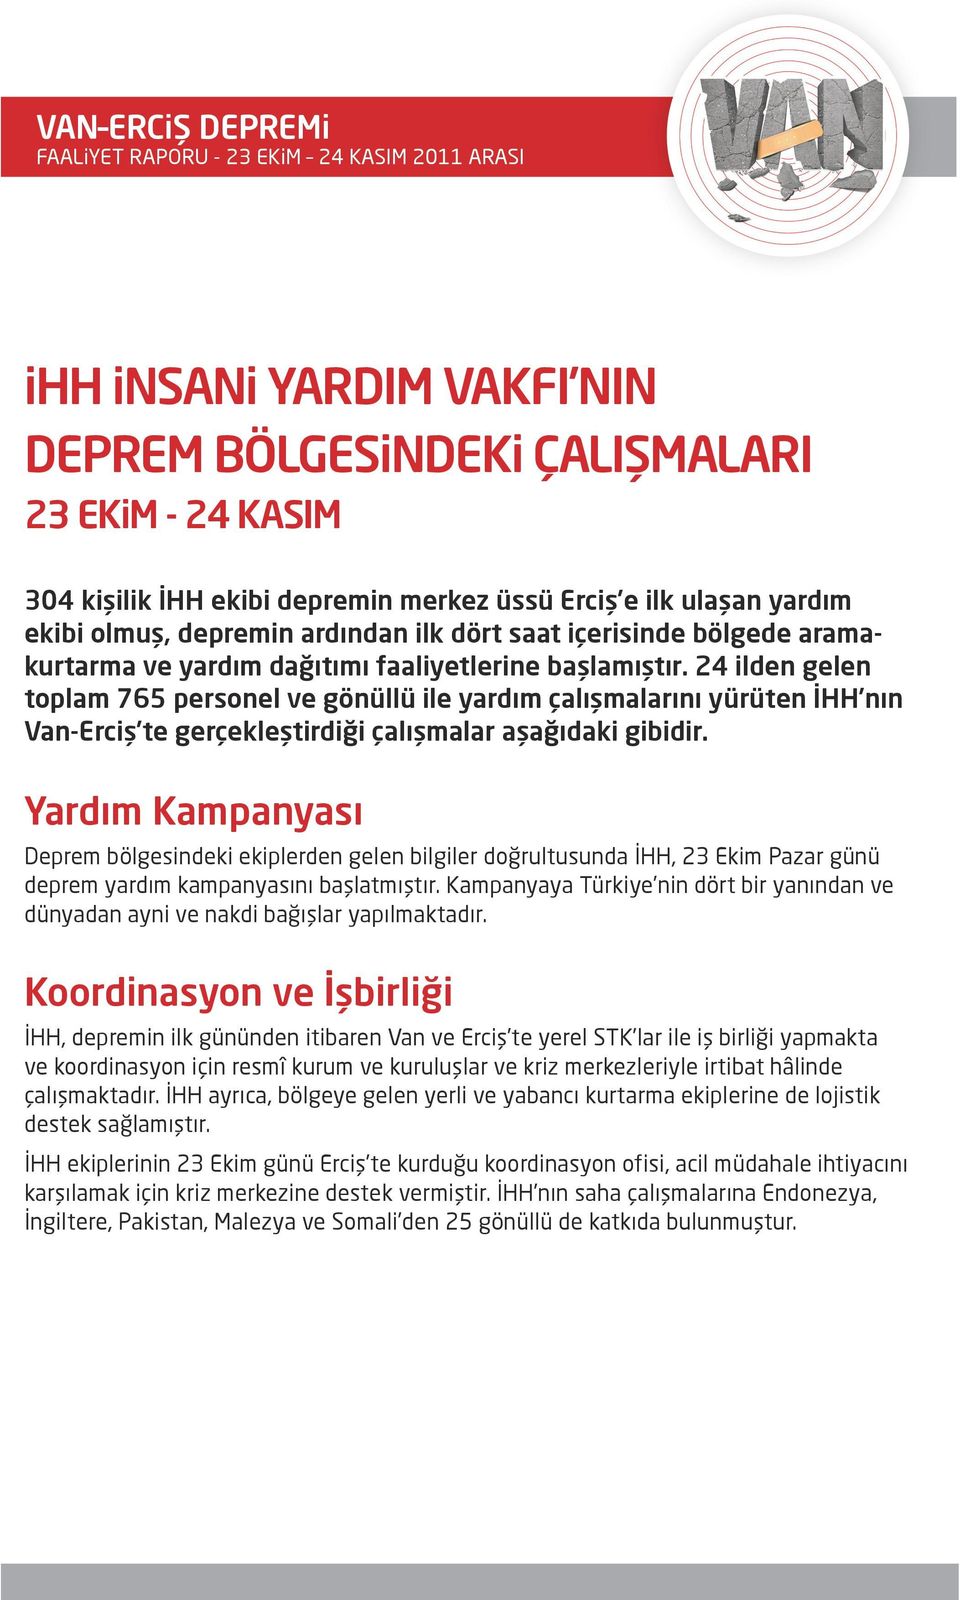 24 ilden gelen toplam 765 personel ve gönüllü ile yardım çalışmalarını yürüten İHH nın Van-Erciş te gerçekleştirdiği çalışmalar aşağıdaki gibidir.